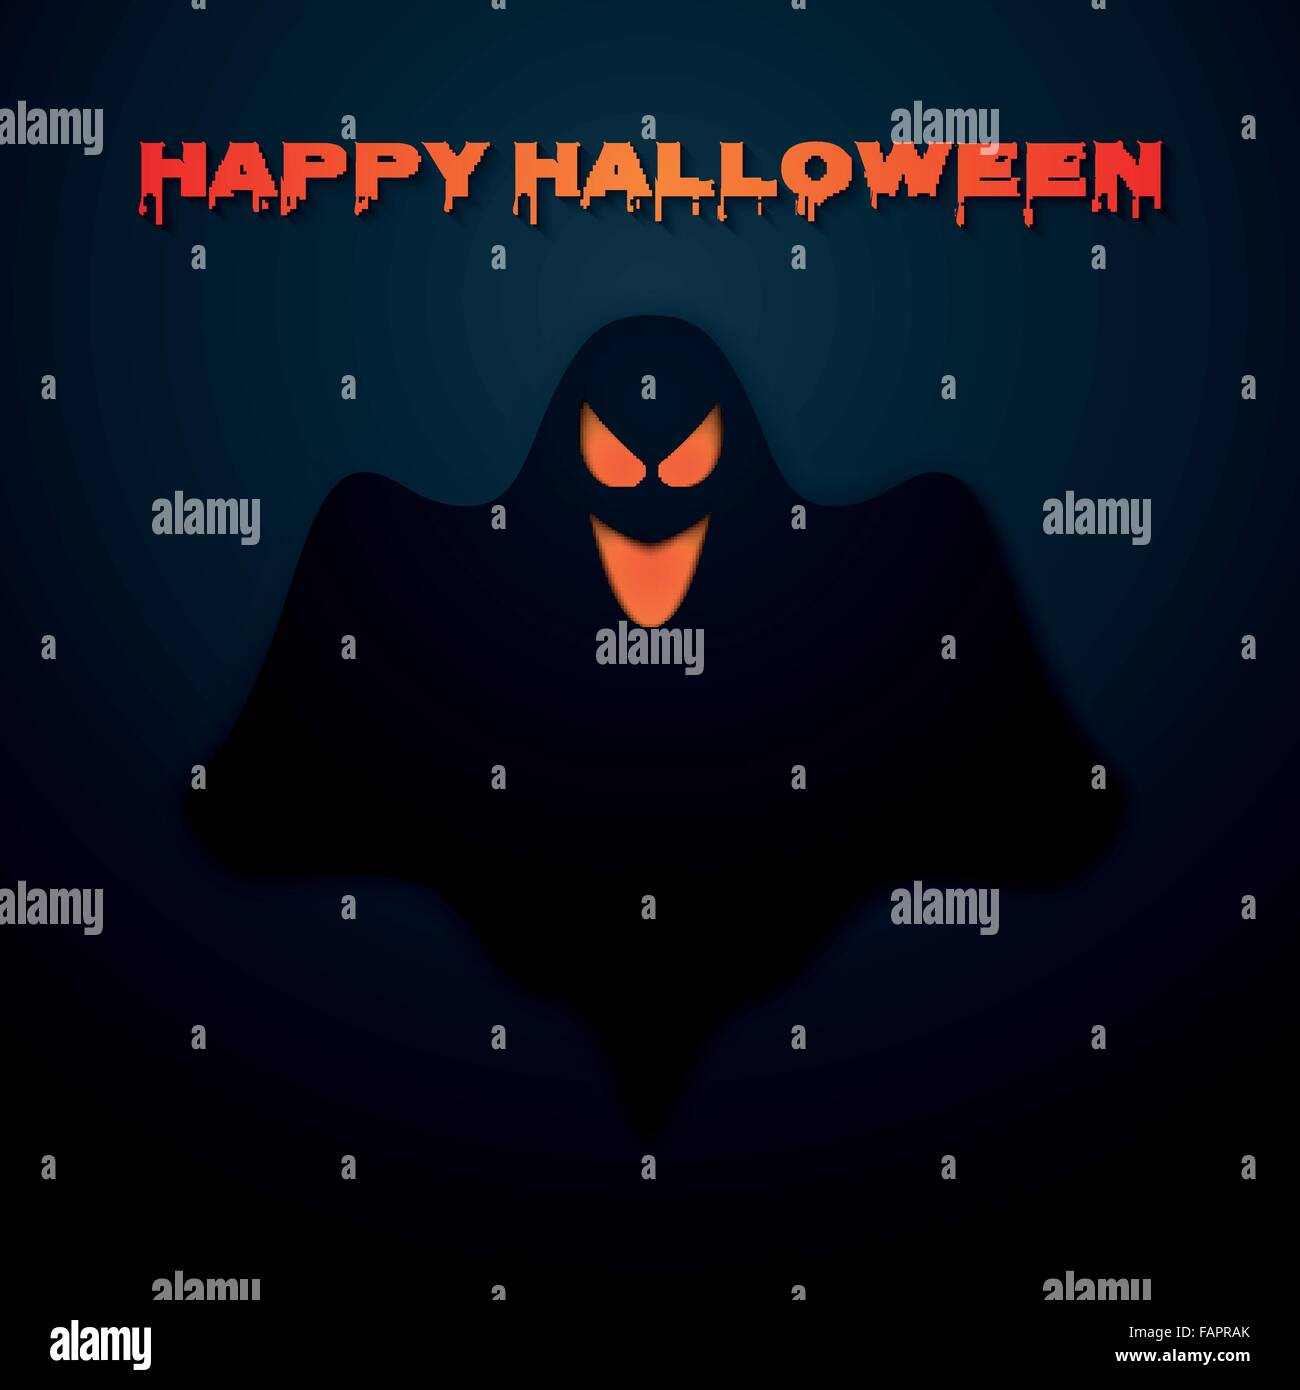 Stock Vector Happy Halloween. Ghost Illustration de Vecteur